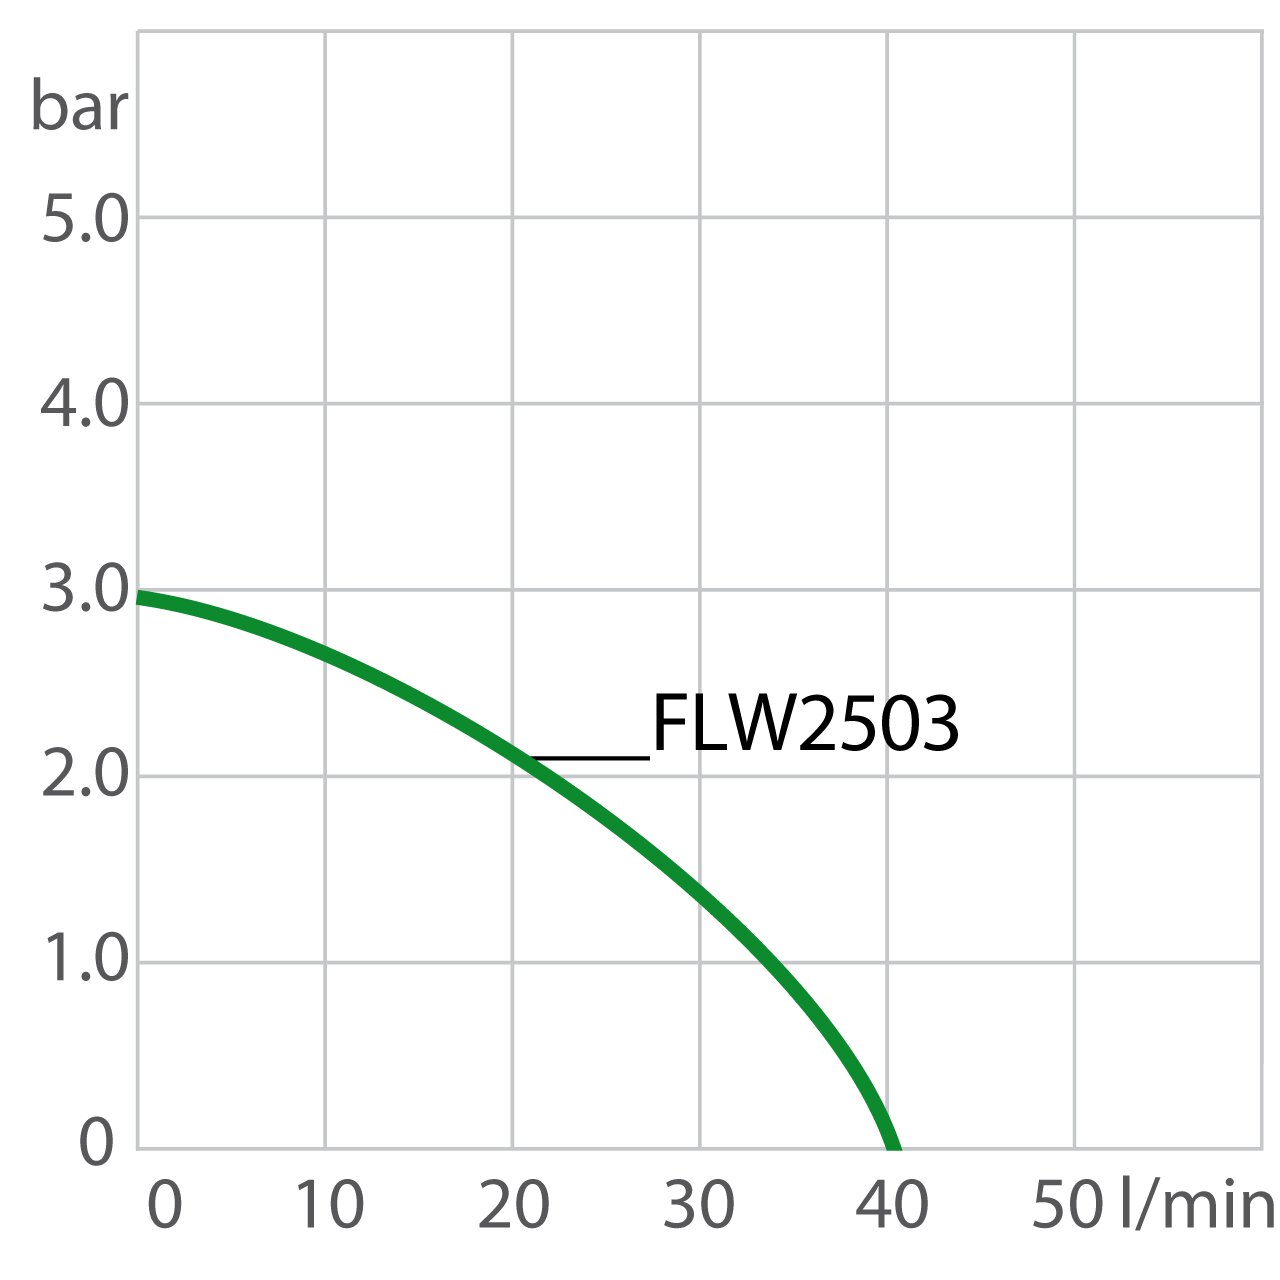 Puissance de la pompe du recirculating cooler FLW2503